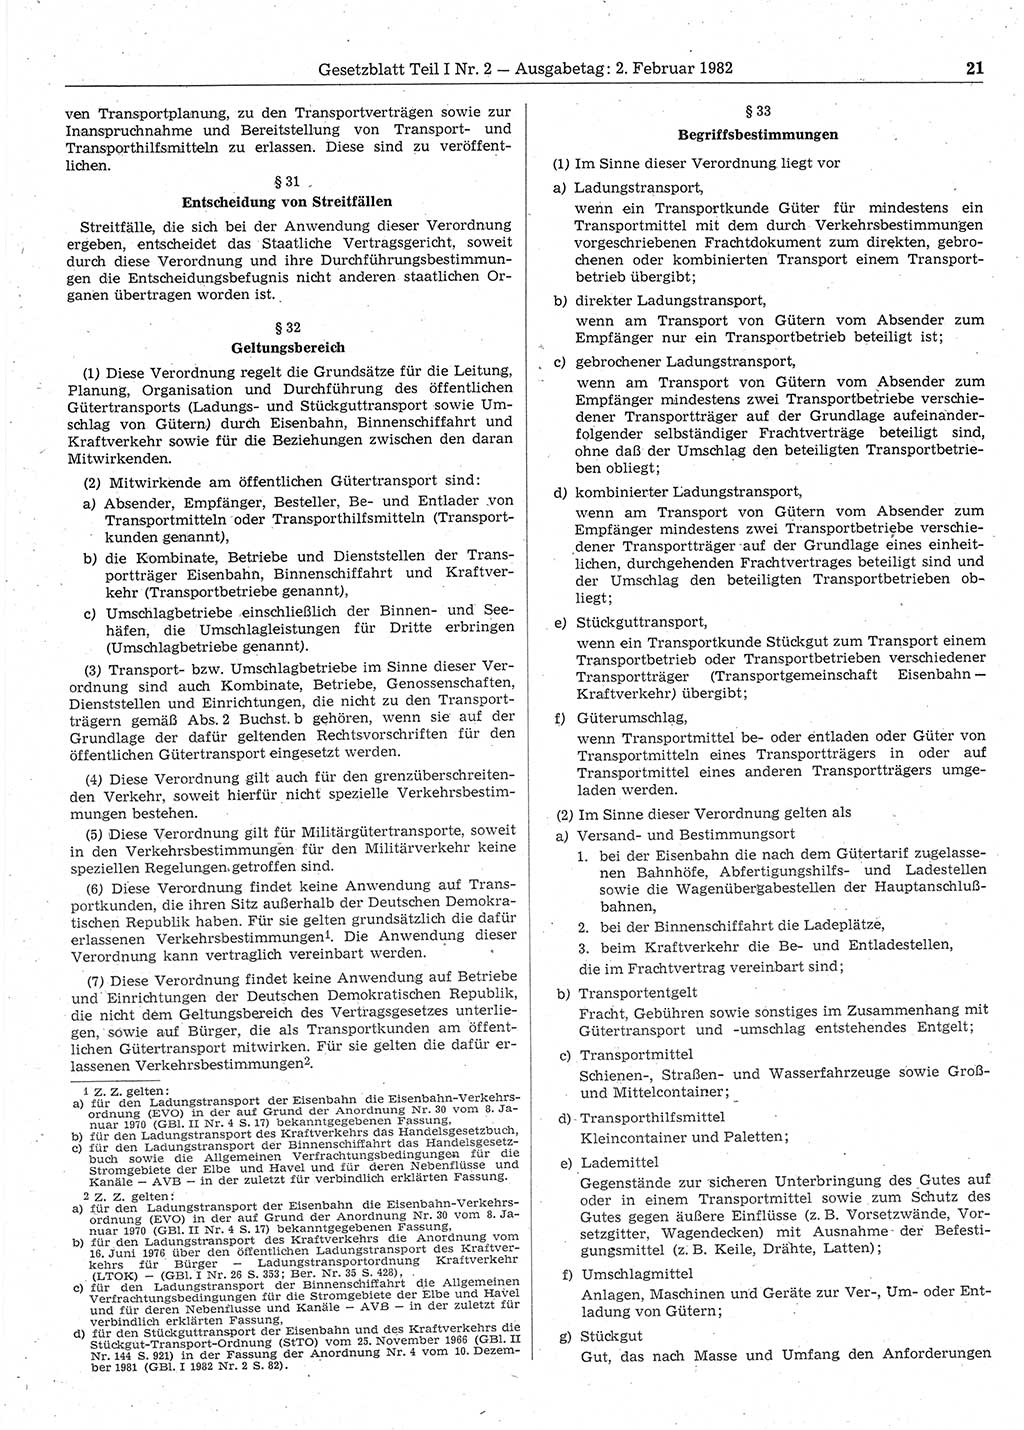 Gesetzblatt (GBl.) der Deutschen Demokratischen Republik (DDR) Teil Ⅰ 1982, Seite 21 (GBl. DDR Ⅰ 1982, S. 21)